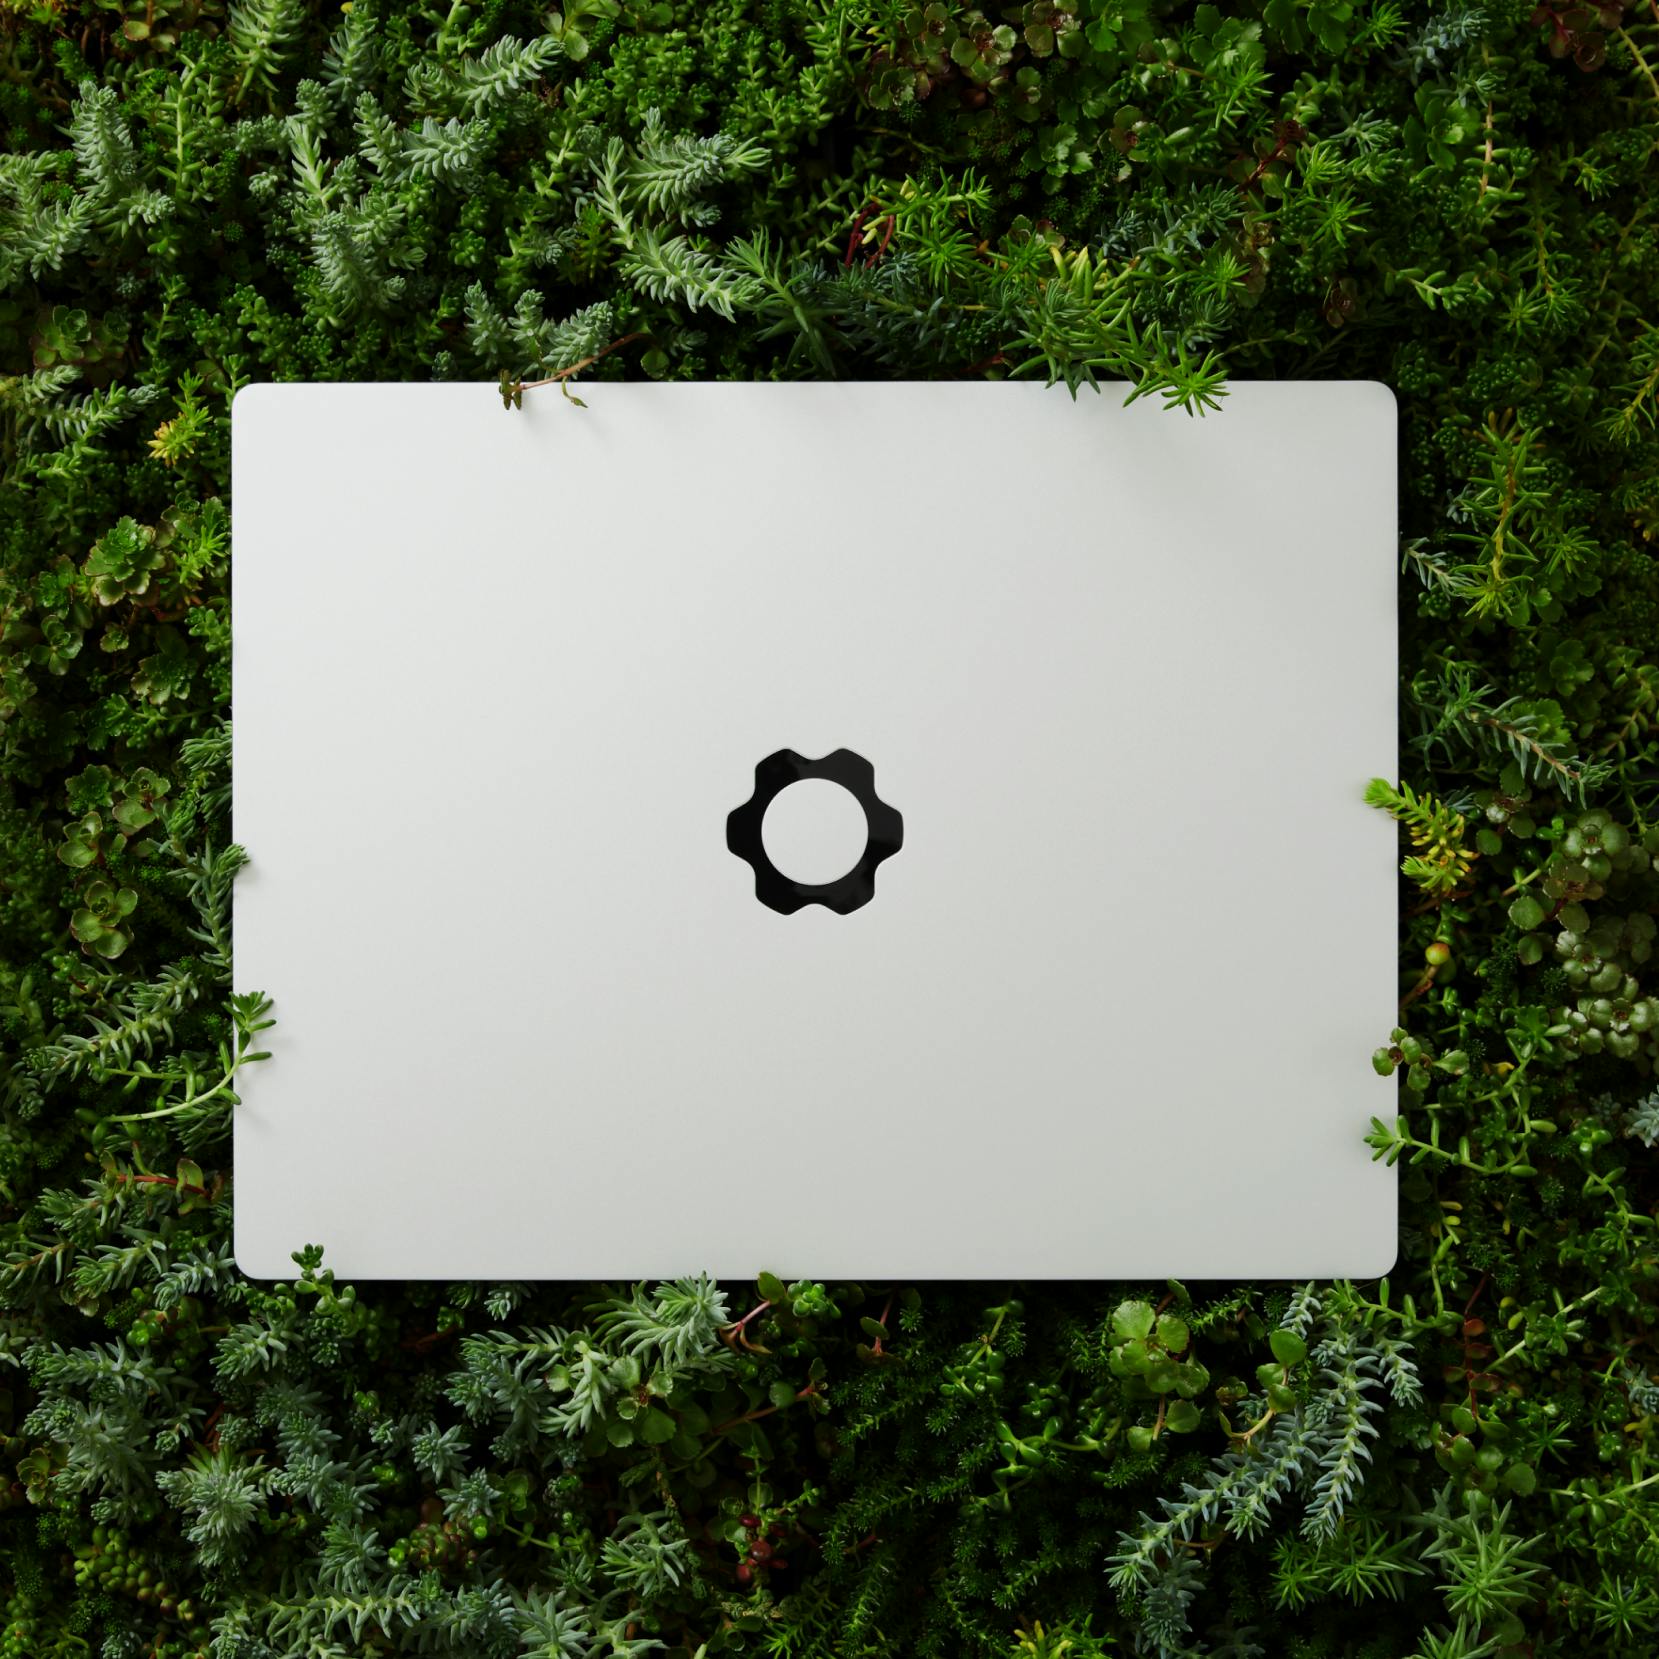 A Framework laptop on a lawn